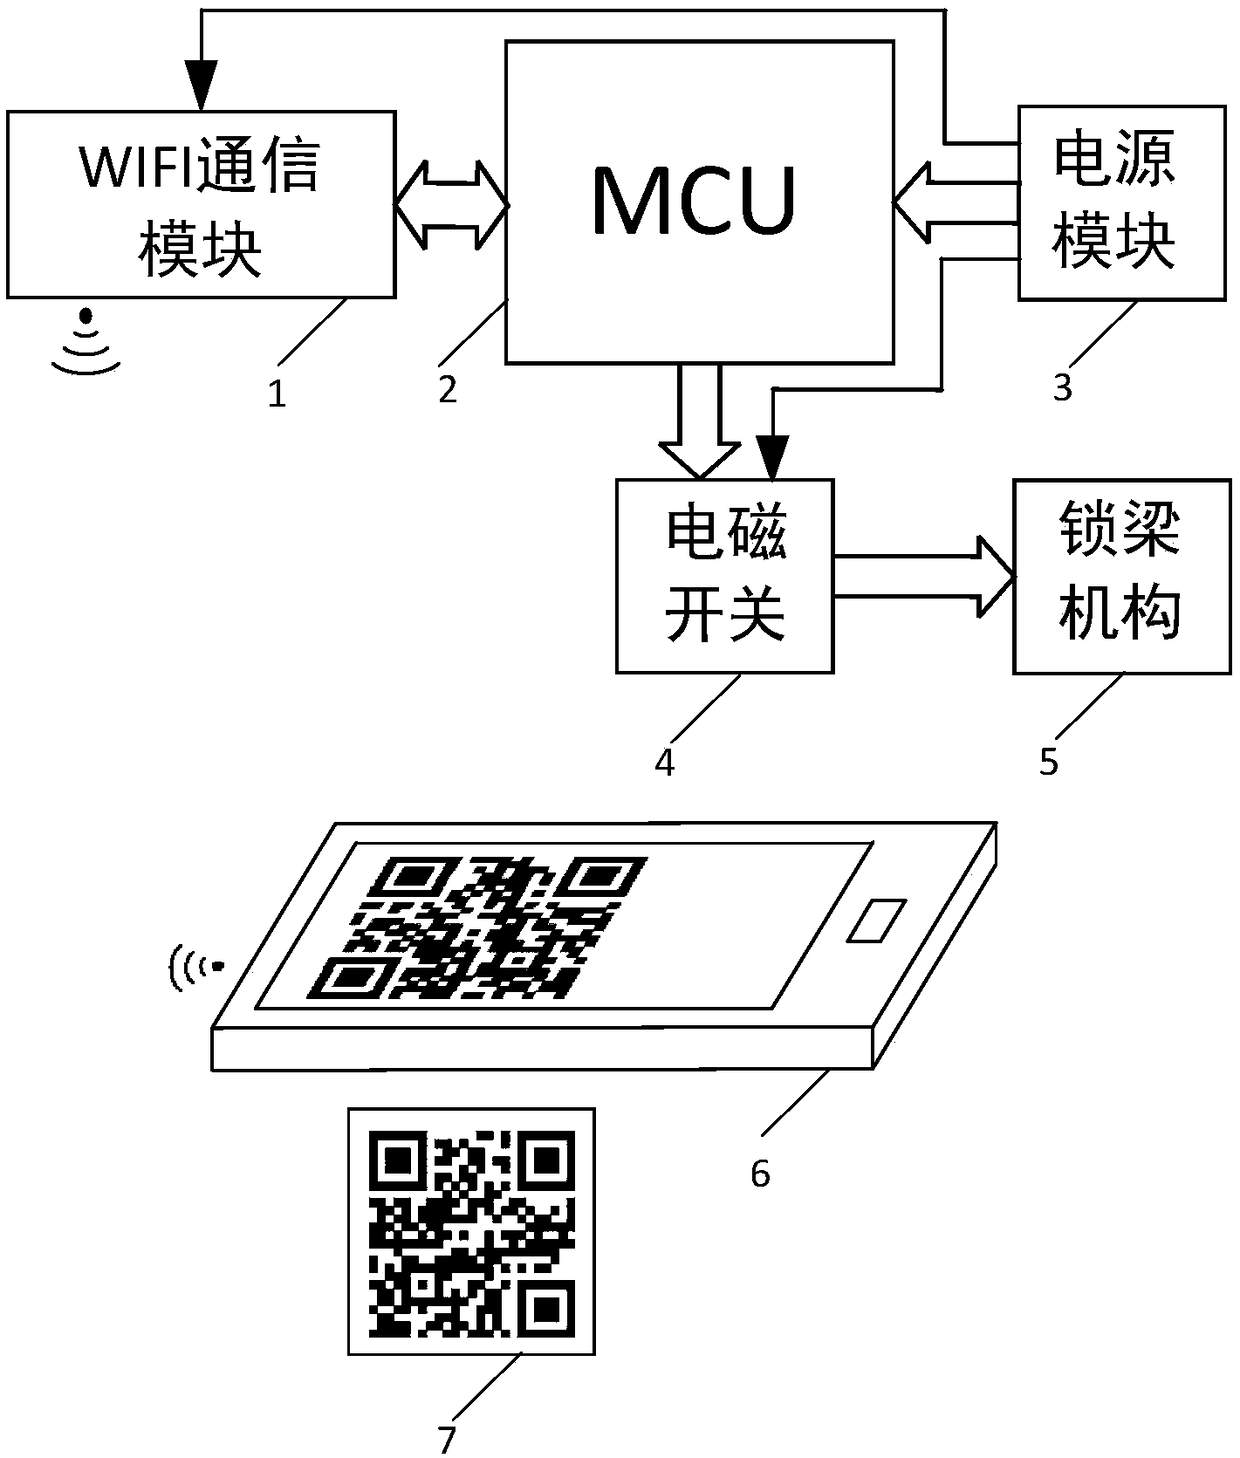 WIFI (wireless fidelity) point-to-point unlocking device